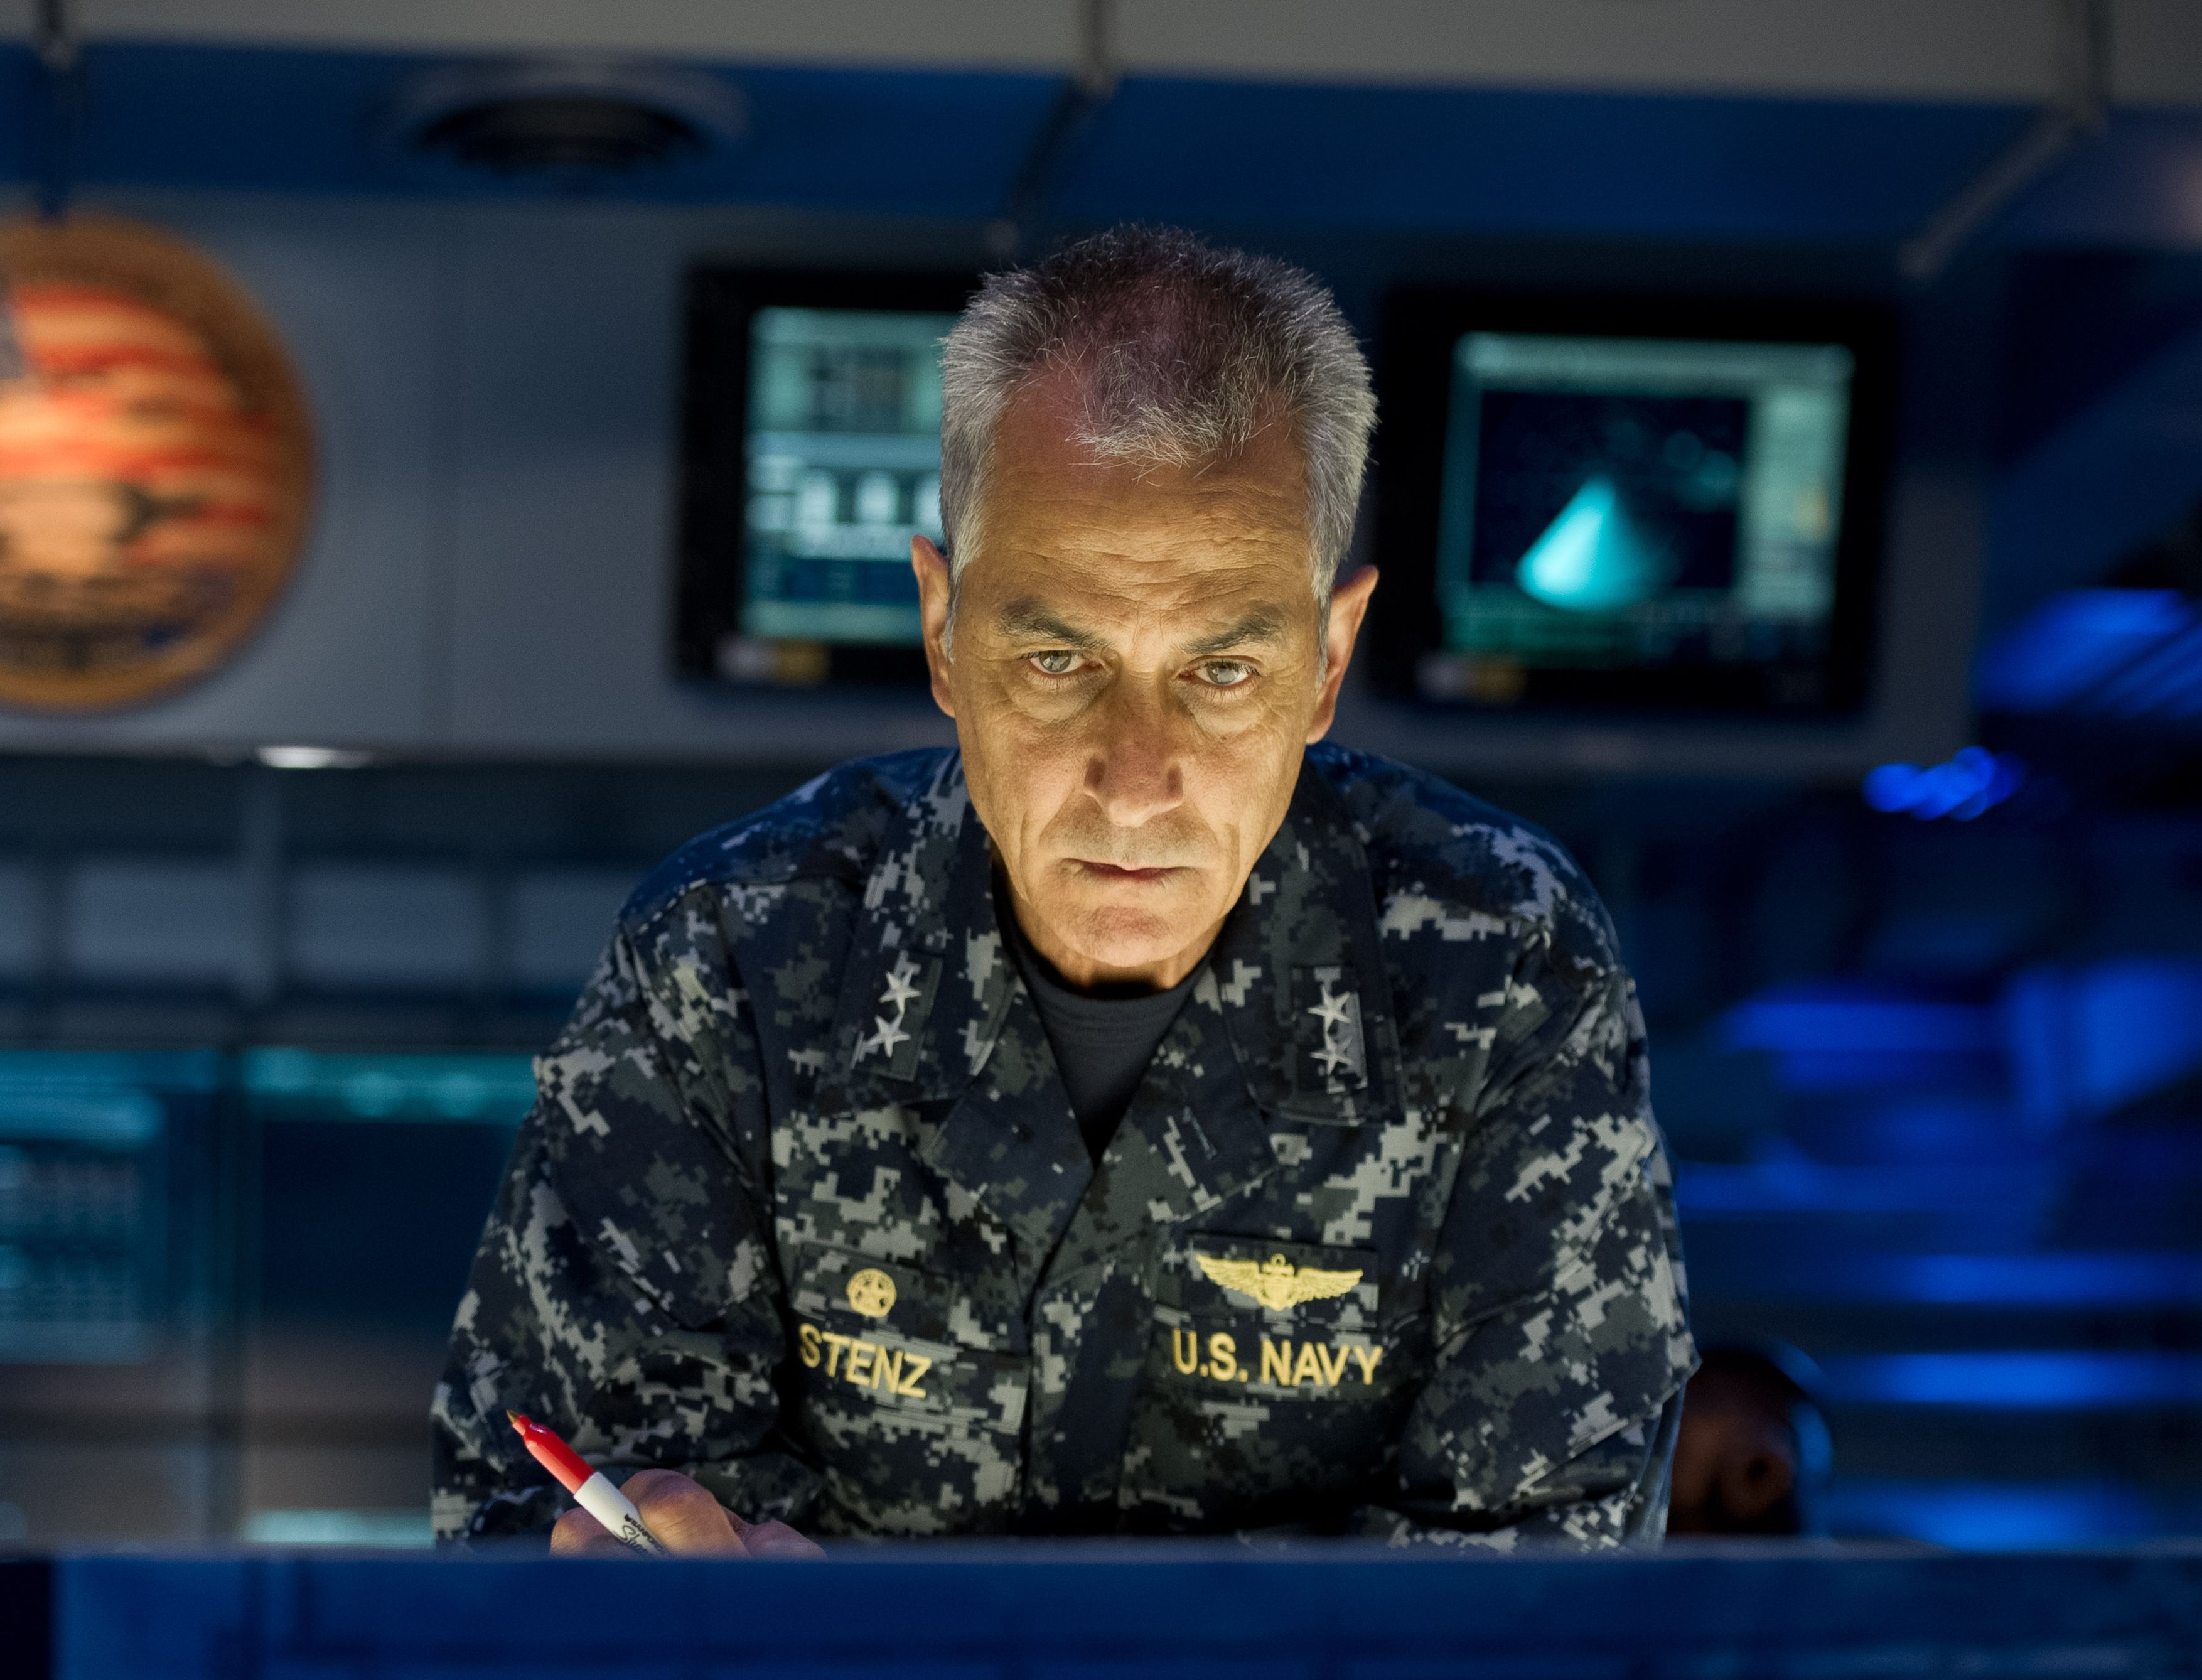 David Strathairn is US Navy Admiral William Stenz in Godzill